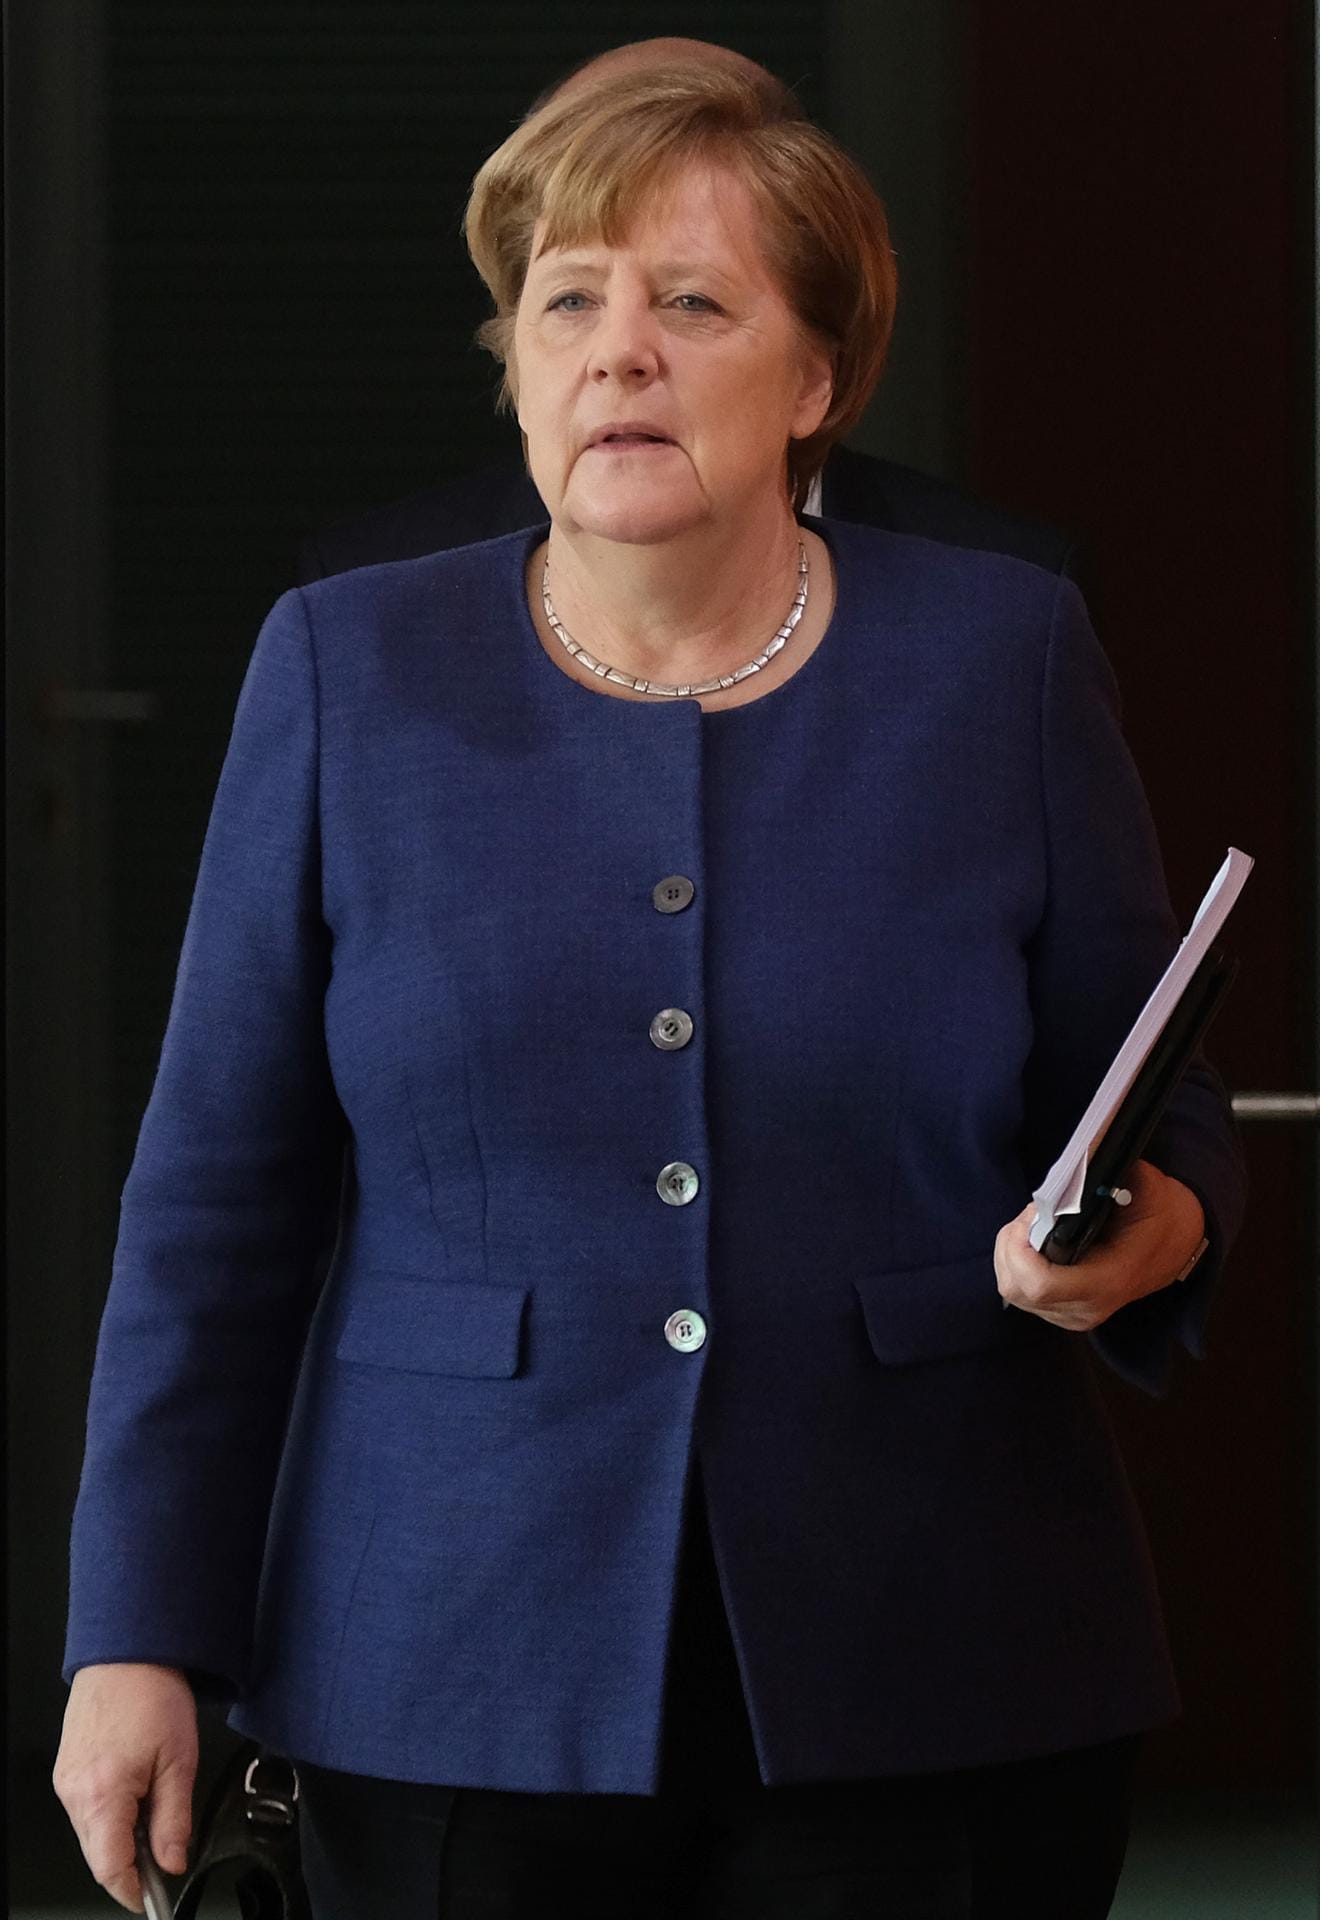 Angela Merkel in Marineblau.